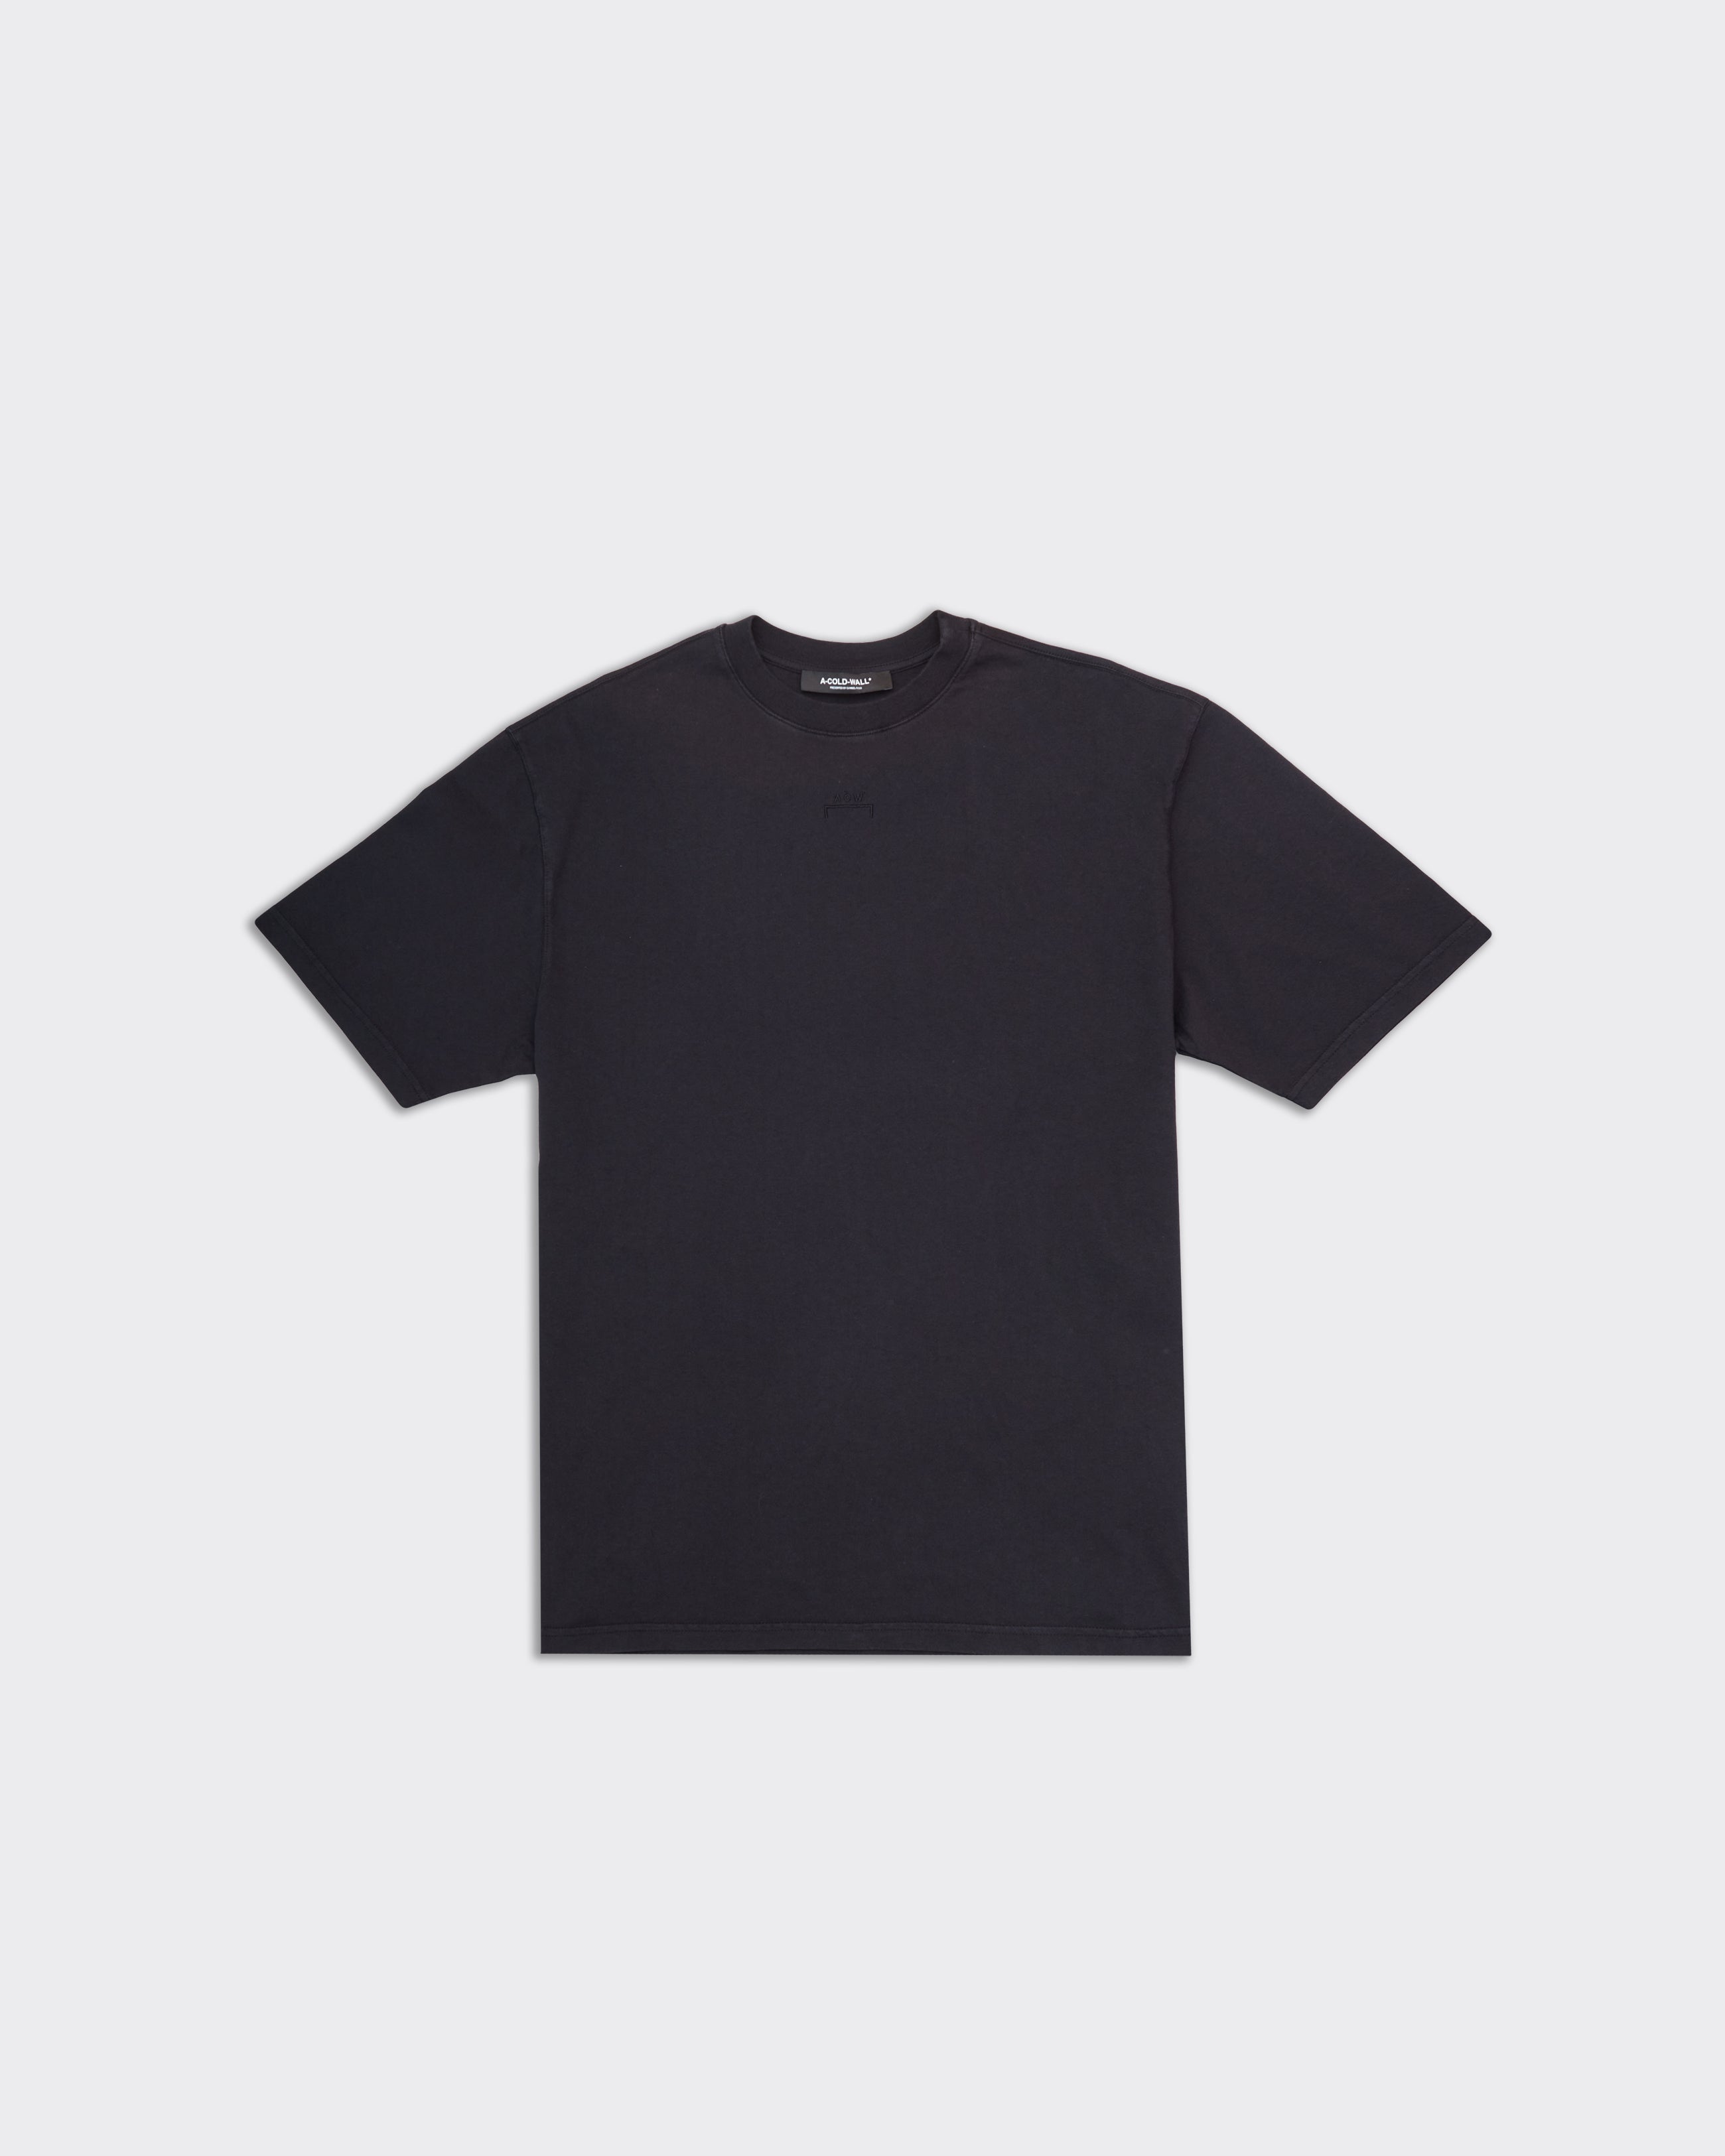 Essential Onyx Black T-shirt